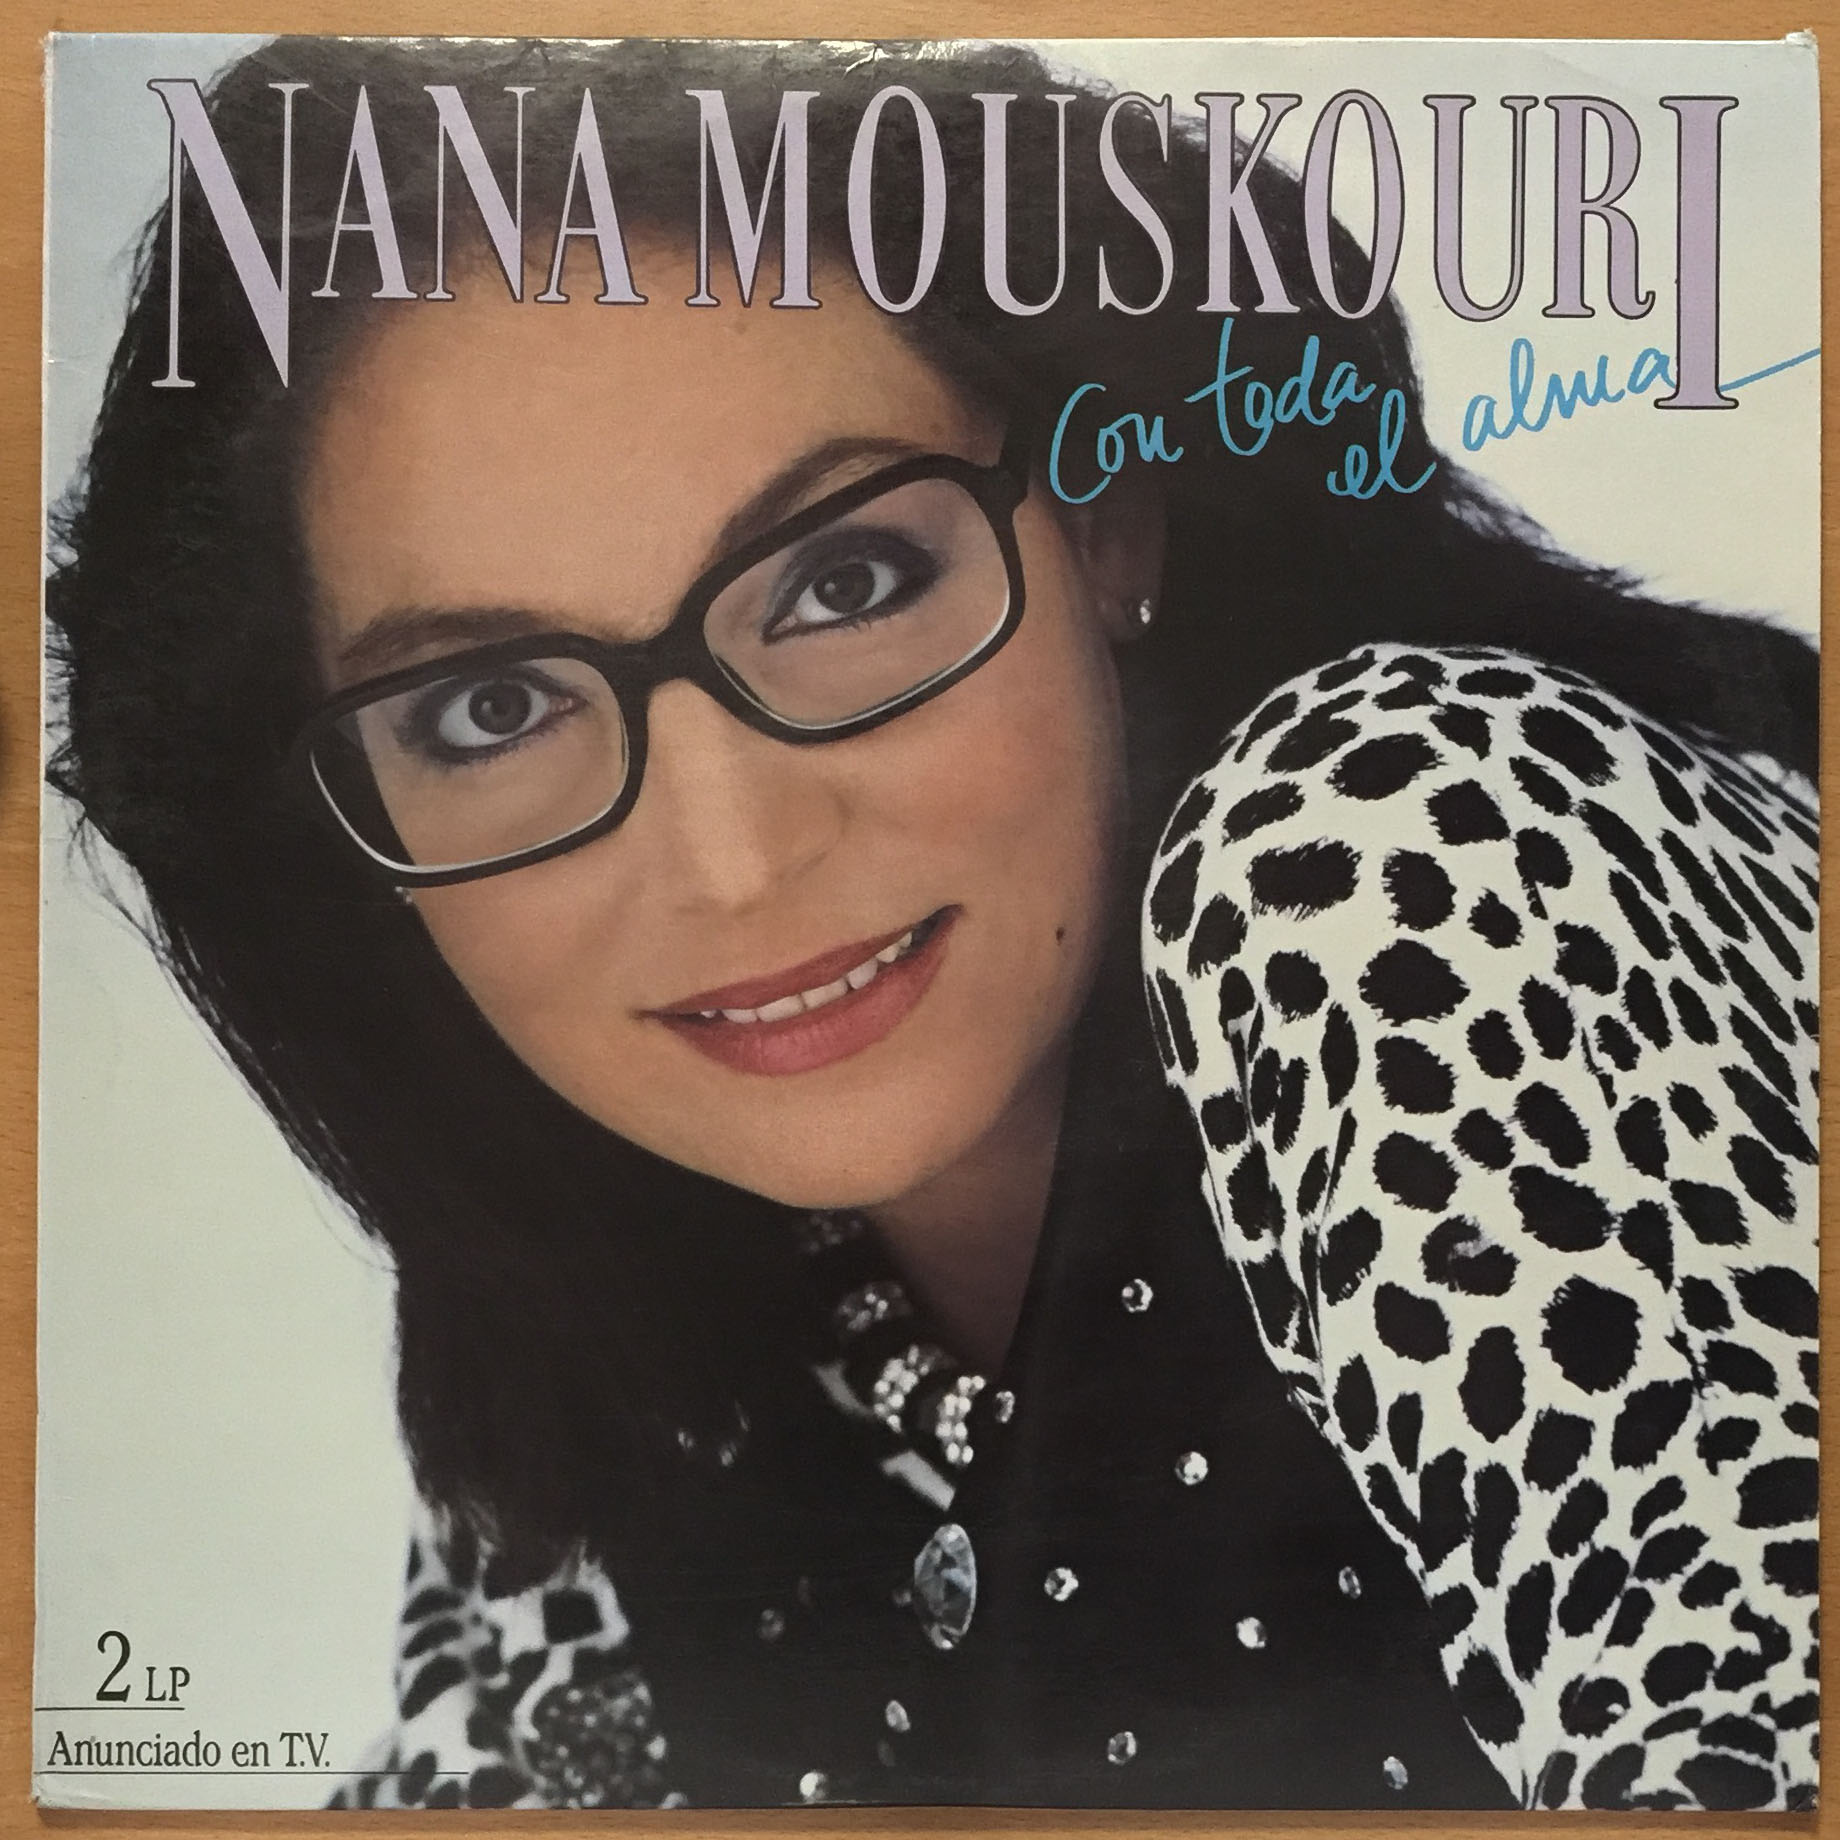 Nana Mouskouri-Con toda el alma. 1986 Philips